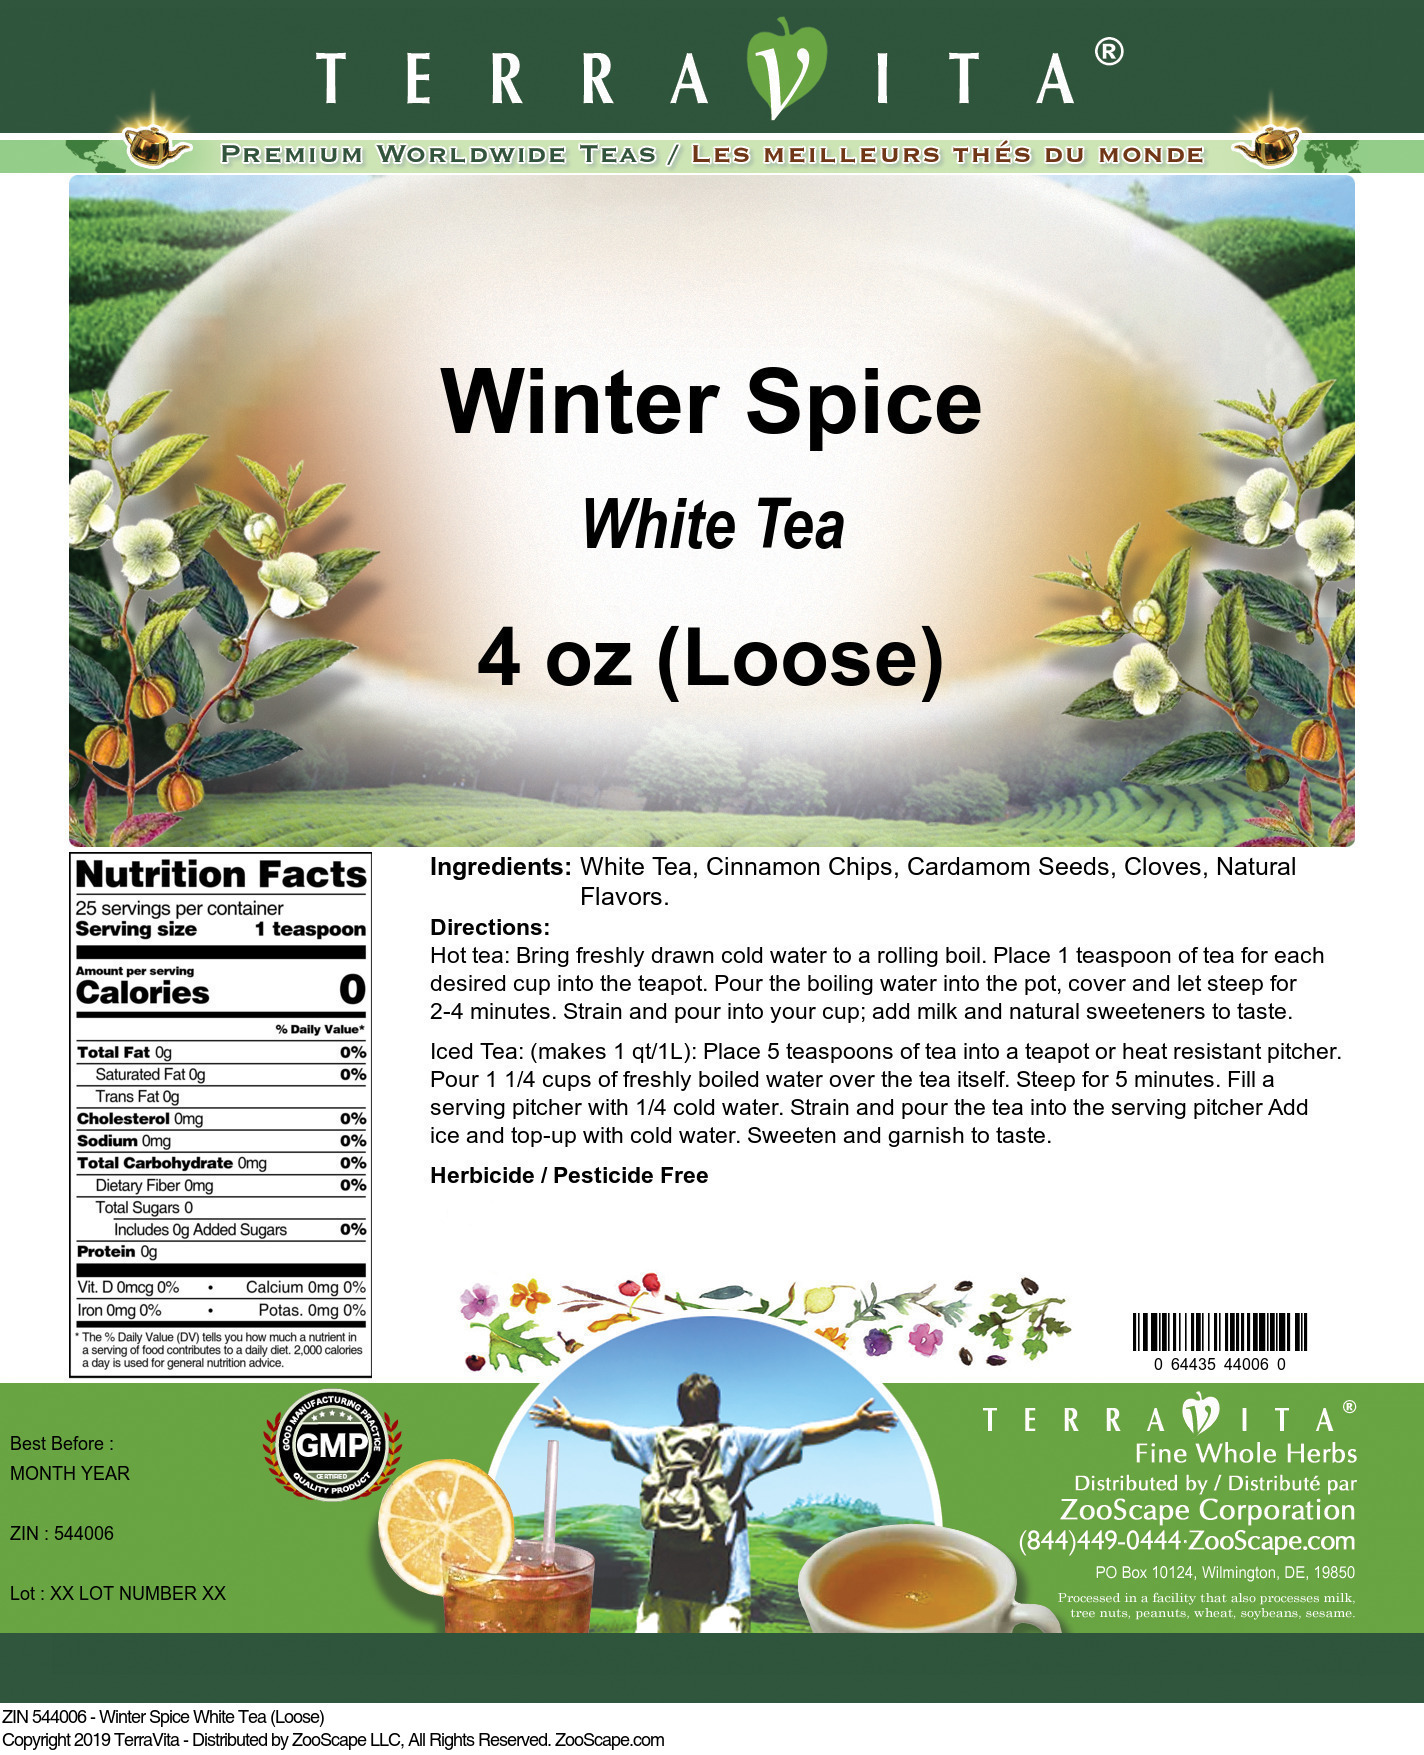 Winter Spice White Tea (Loose) - Label